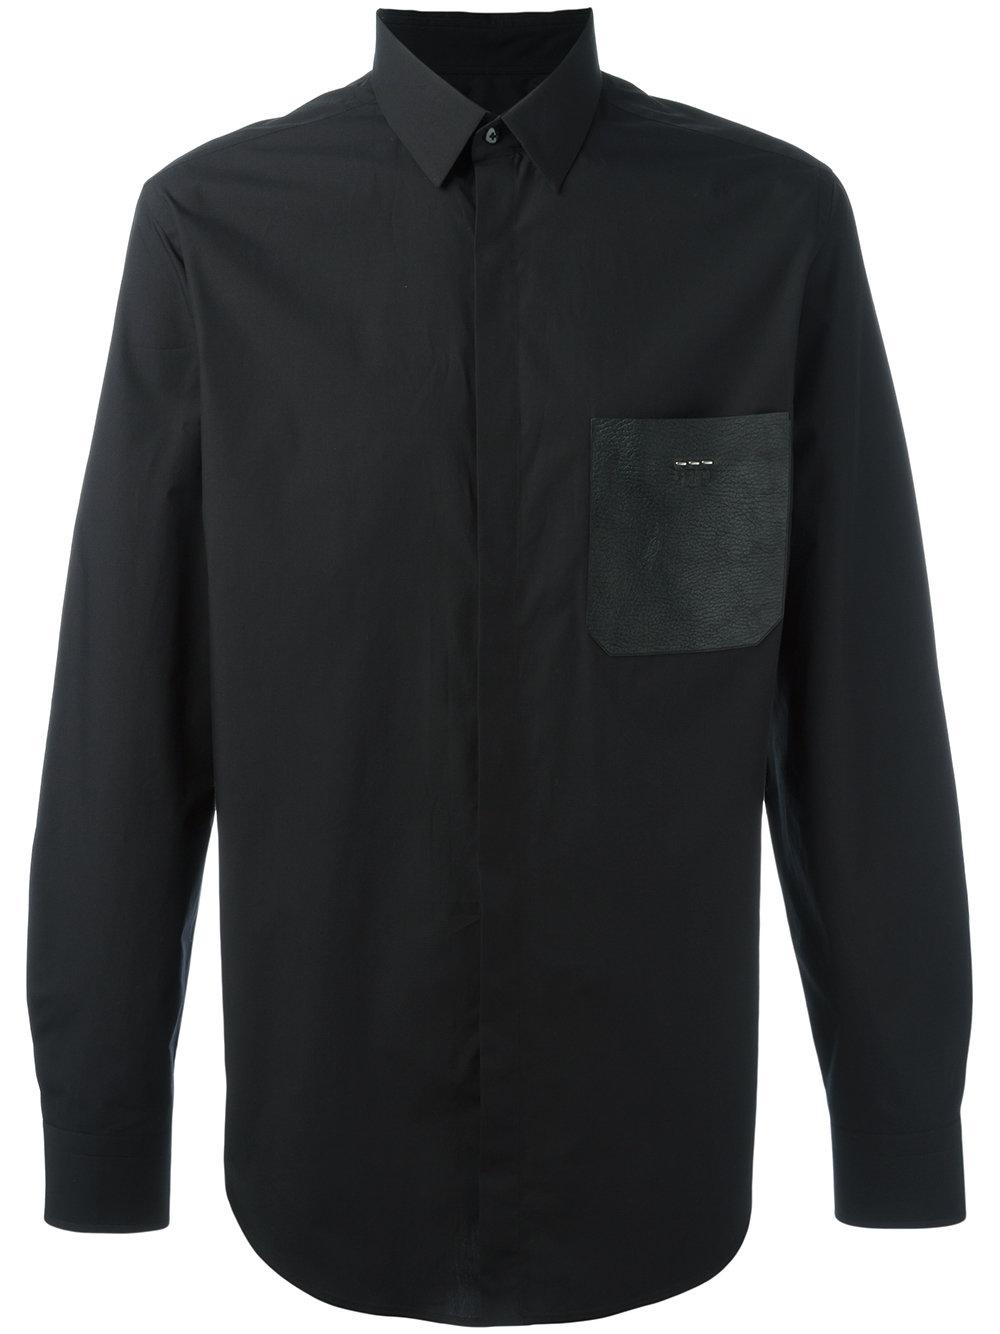 Lyst - Fendi Patch Pocket Shirt in Black for Men